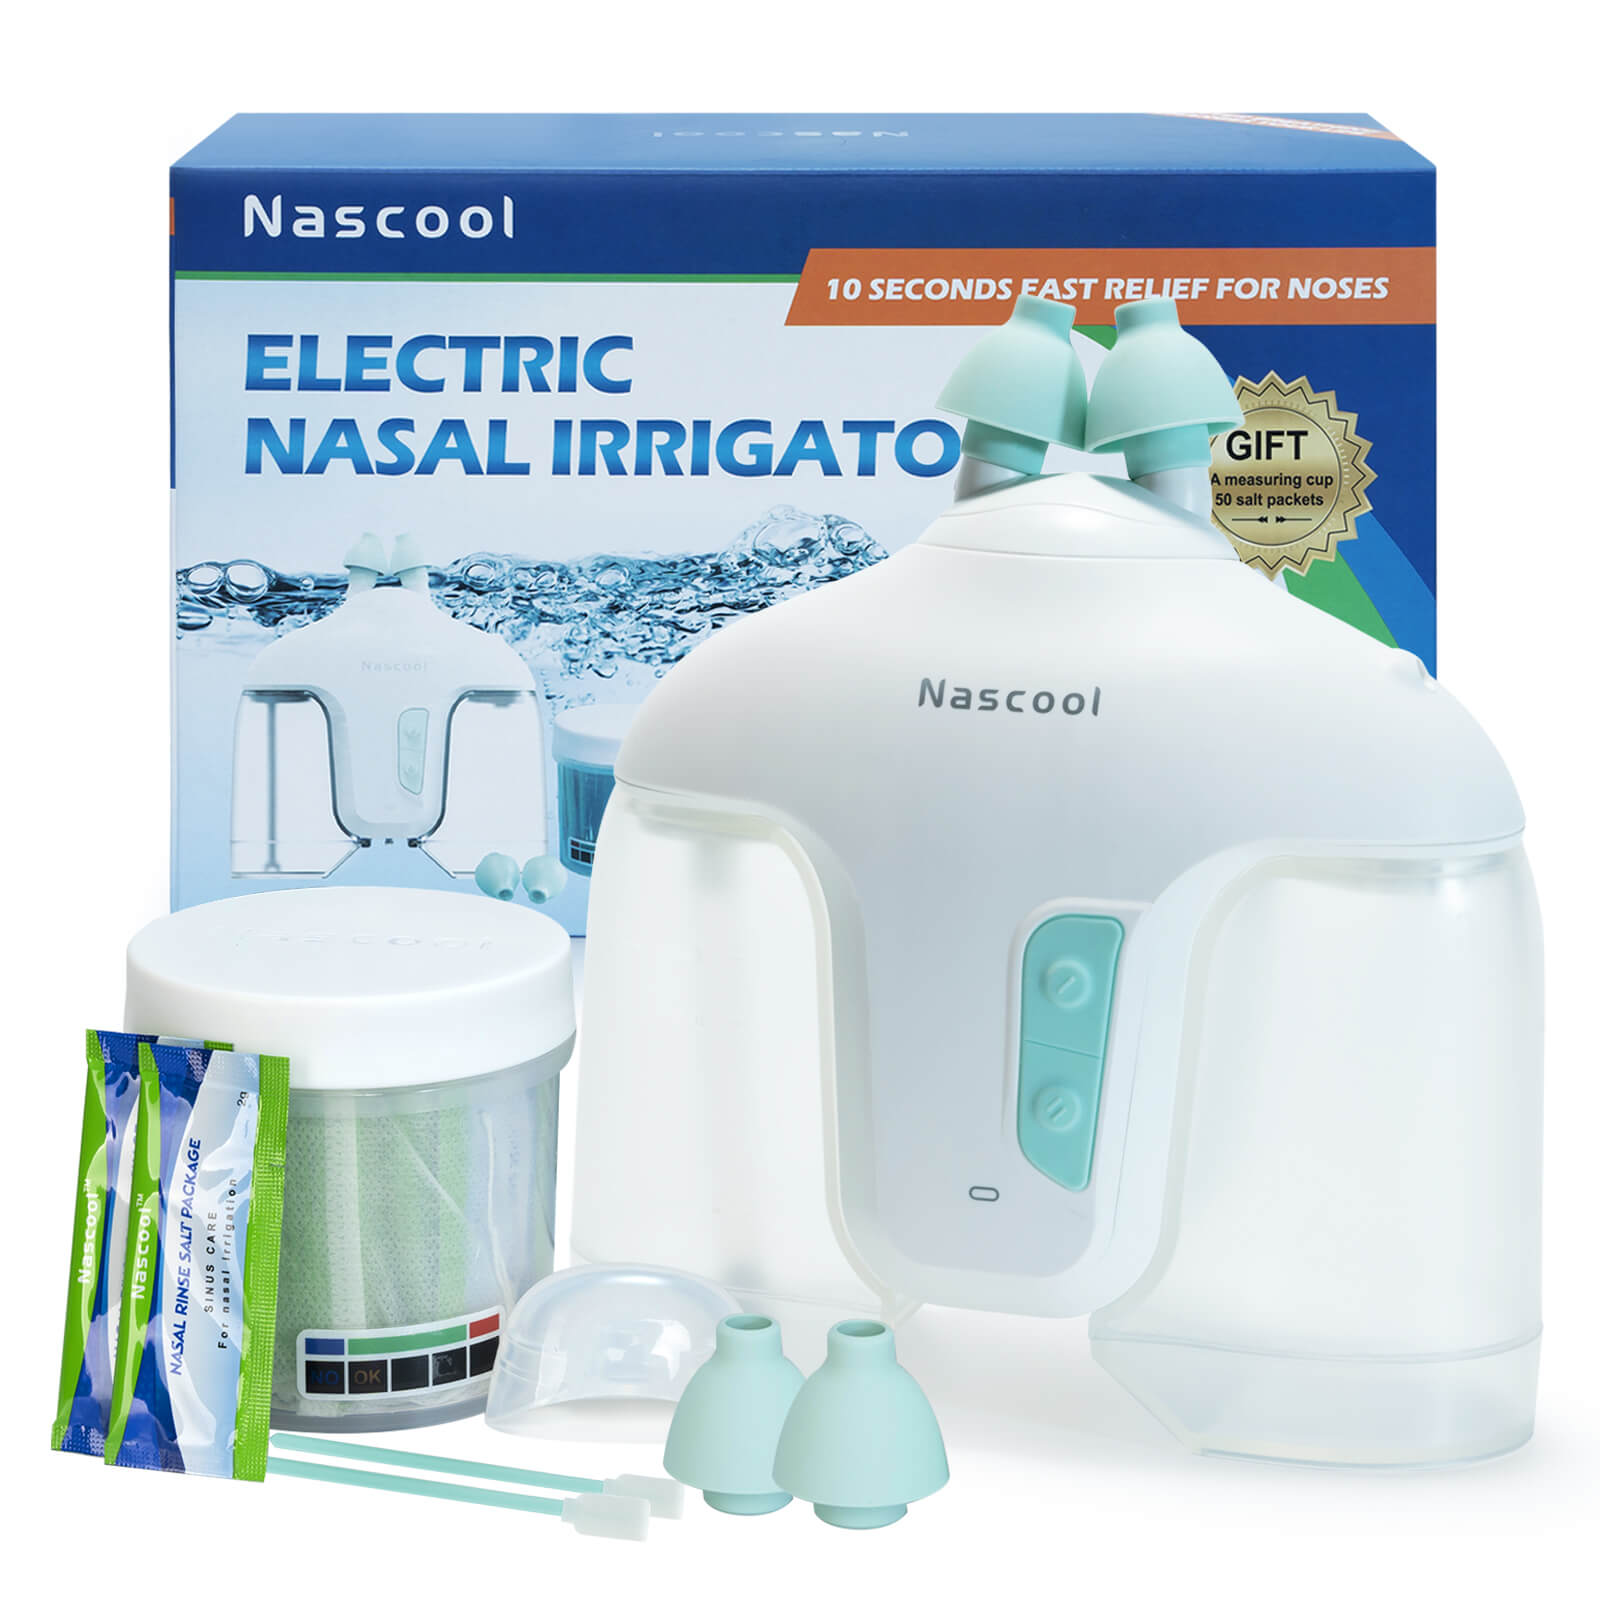 Electrical Nasal Irrigator, Nasal Irrigation Device